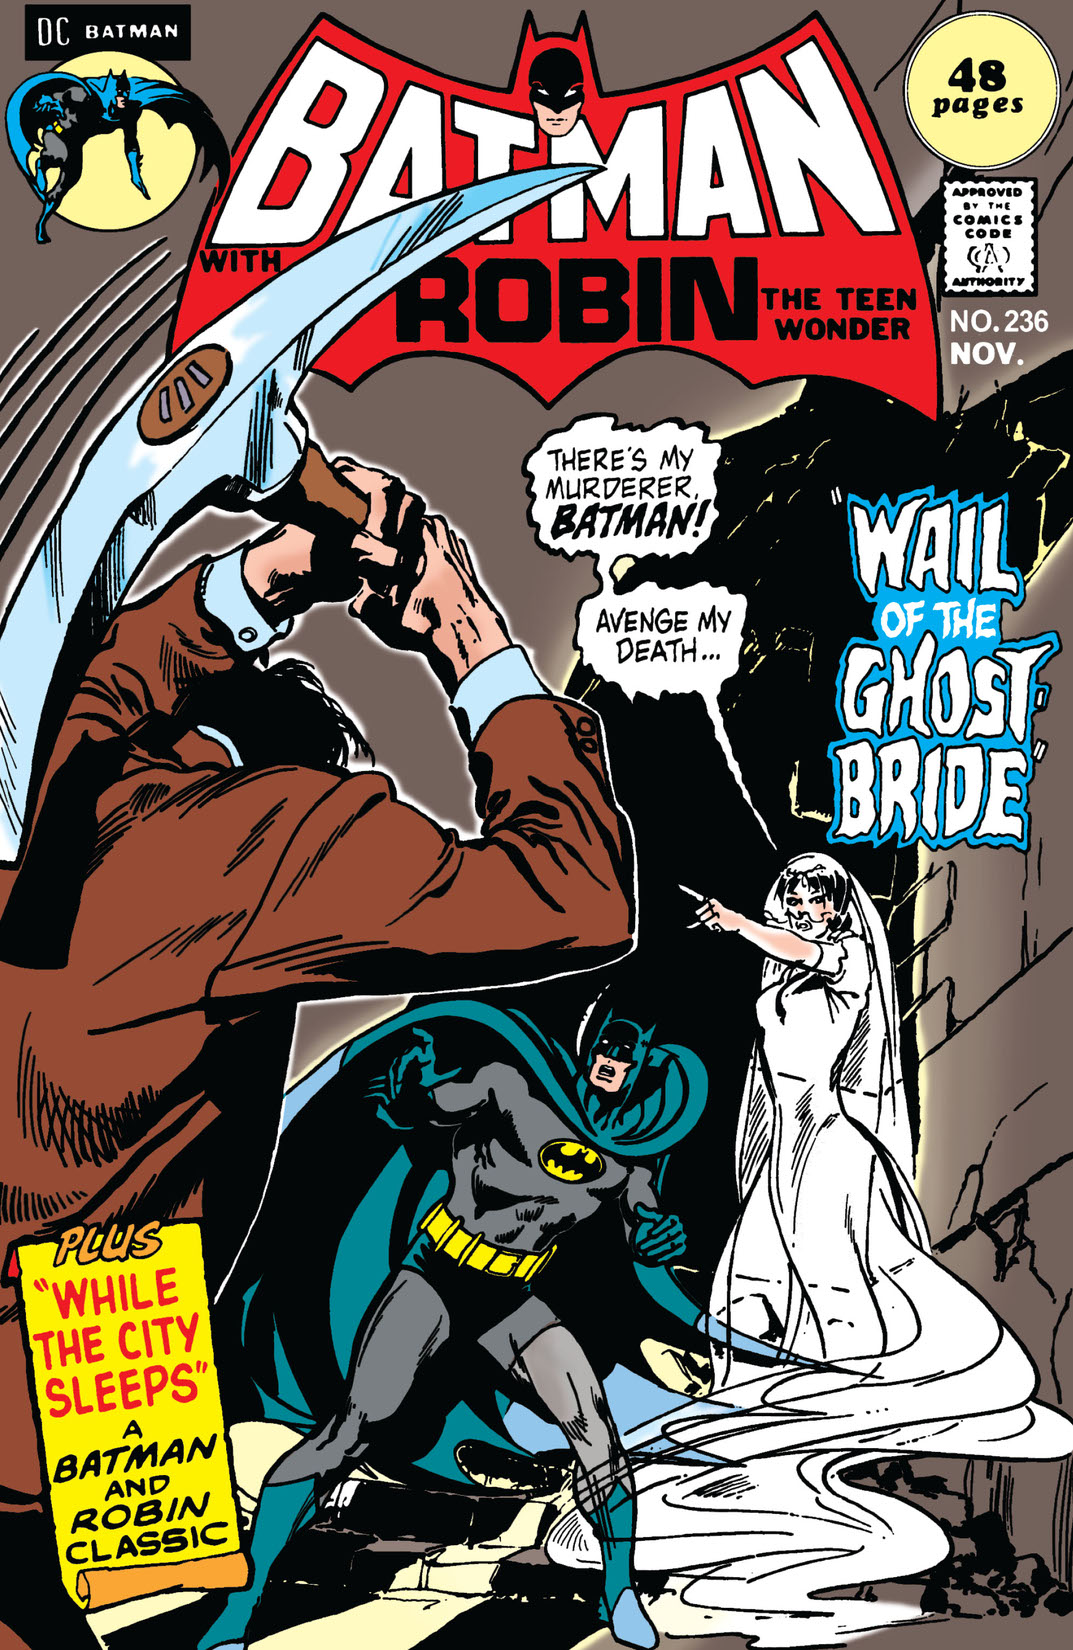 Batman (1940-) #236 preview images